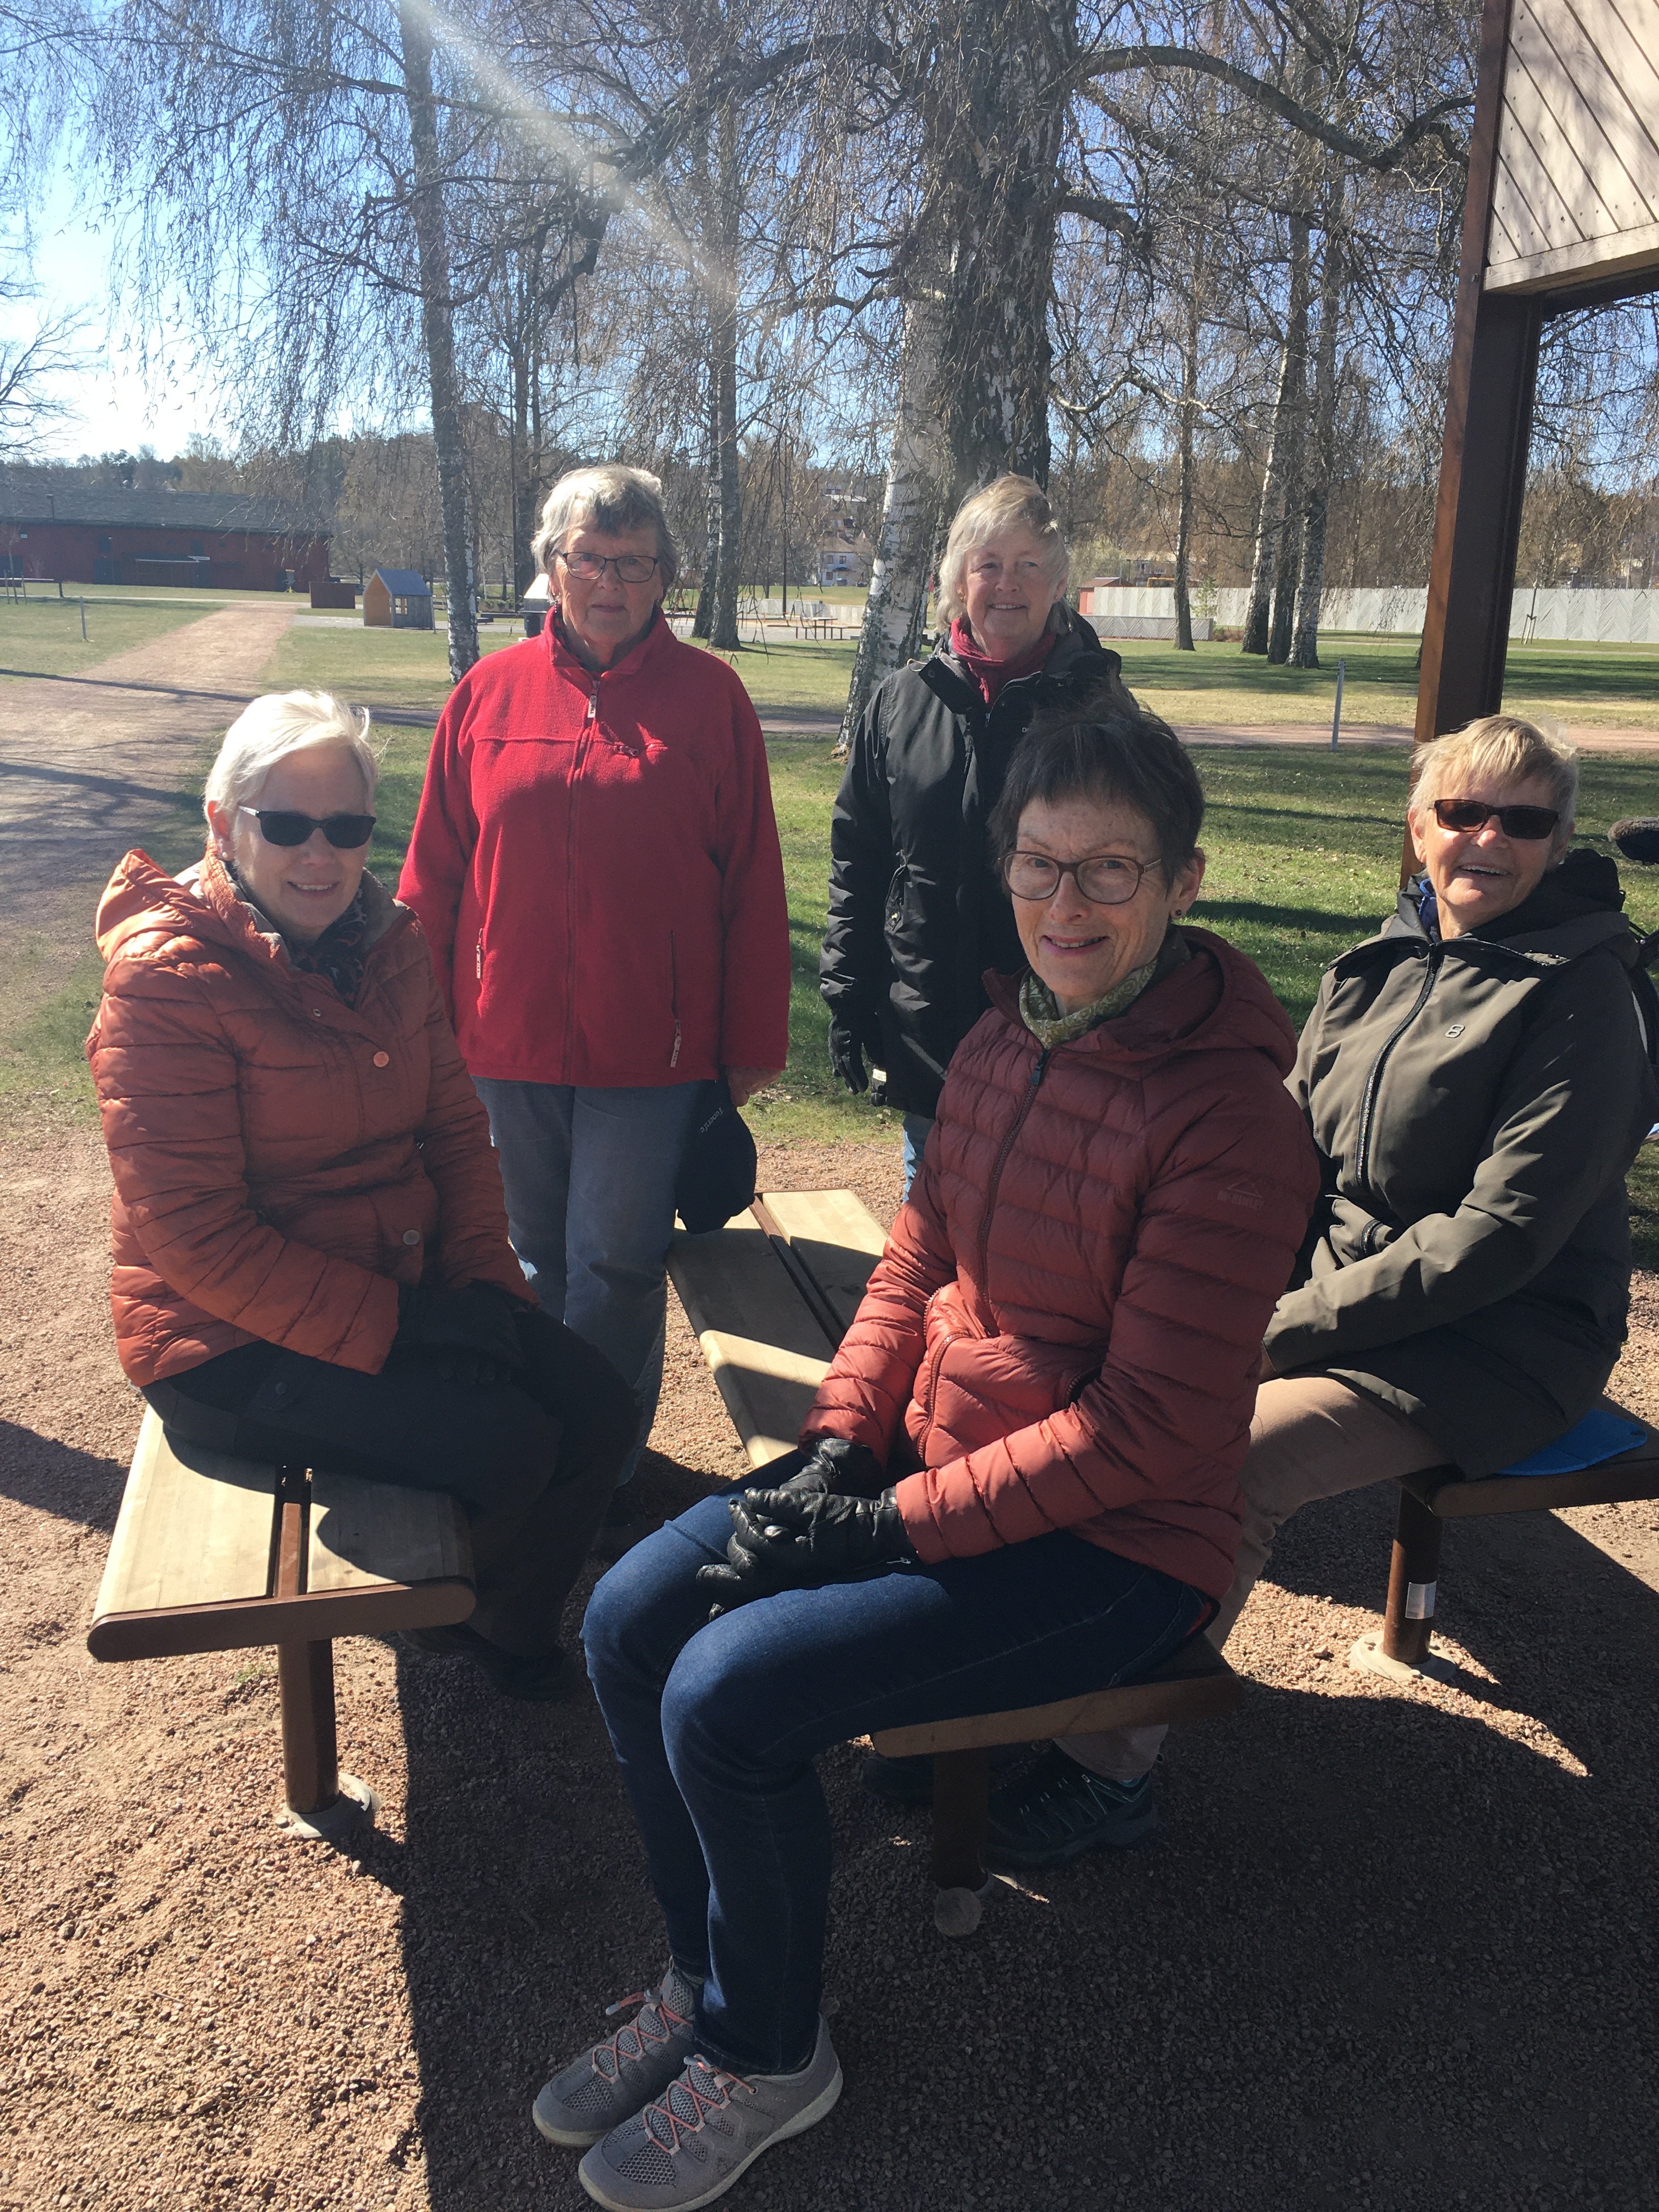 stora råby dating app mötesplatser för äldre i jukkasjärvi